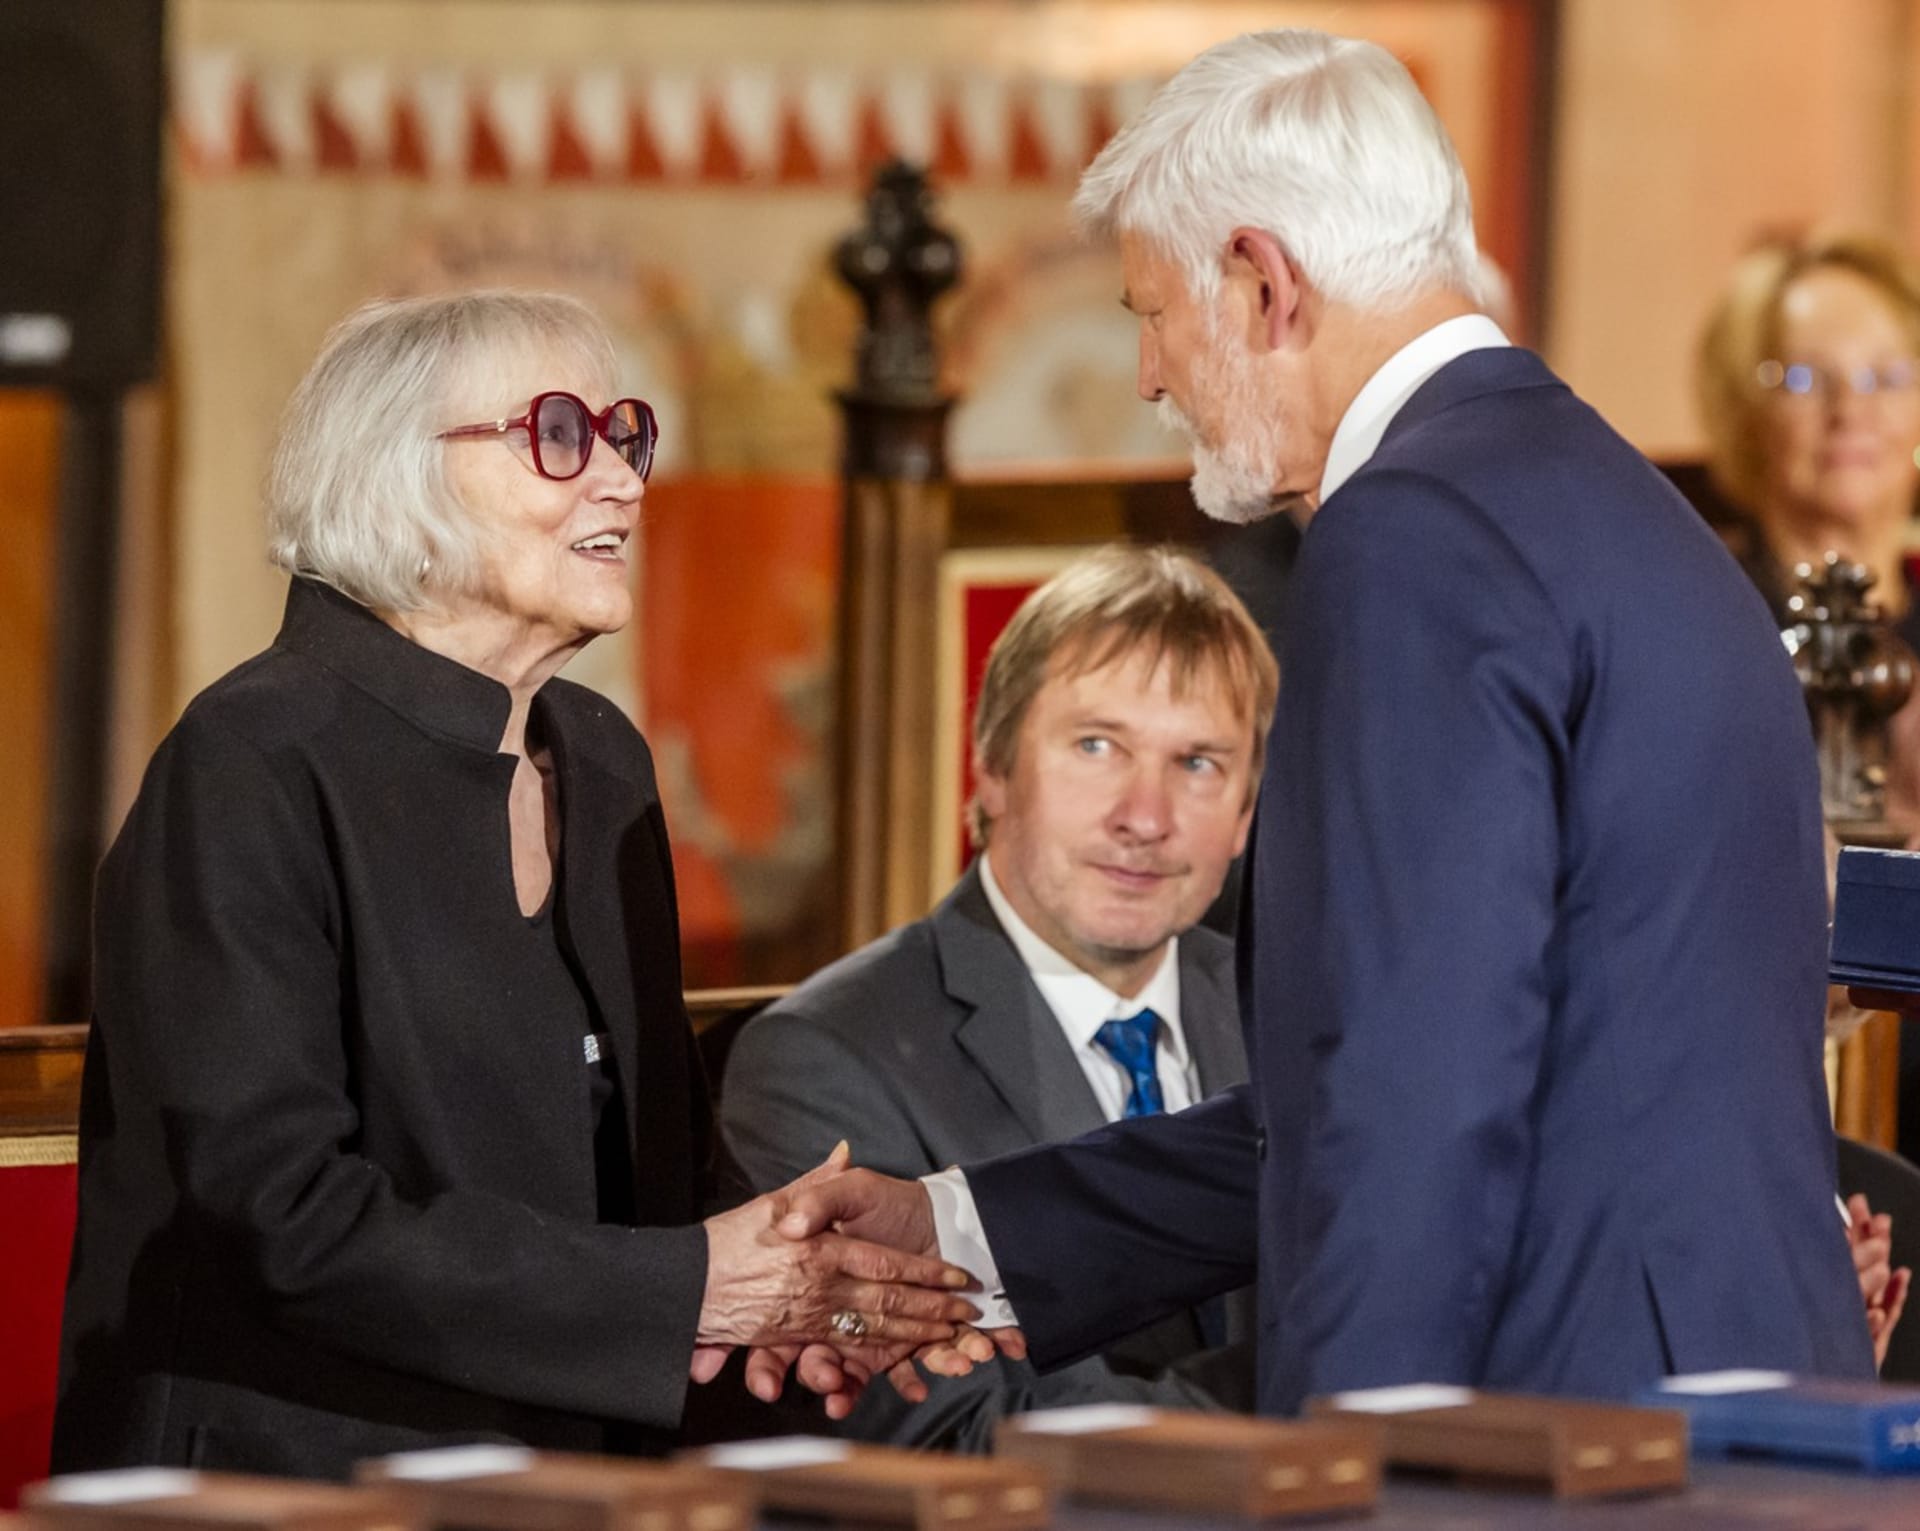 Marta Kubišová letos obdržela státní vyznamenání z rukou prezidenta Petra Pavla.